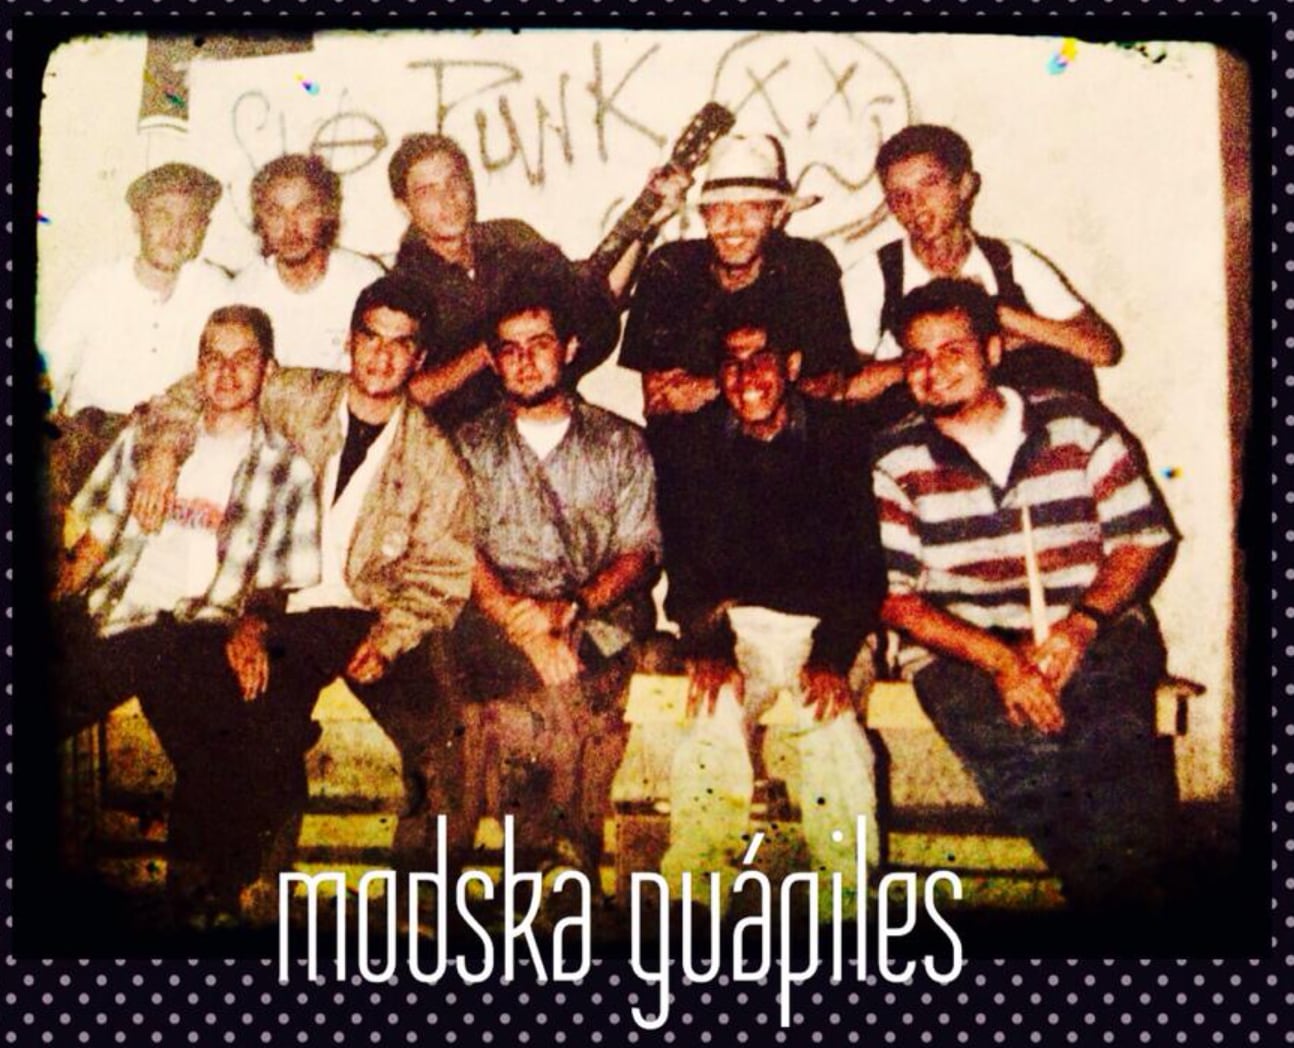 Hace 20 años, Mod Ska se fue consolidando como una de las bandas favoritas entre los amantes del rock y el ska en Costa Rica.  El grupo se presentó en varias partes del país.